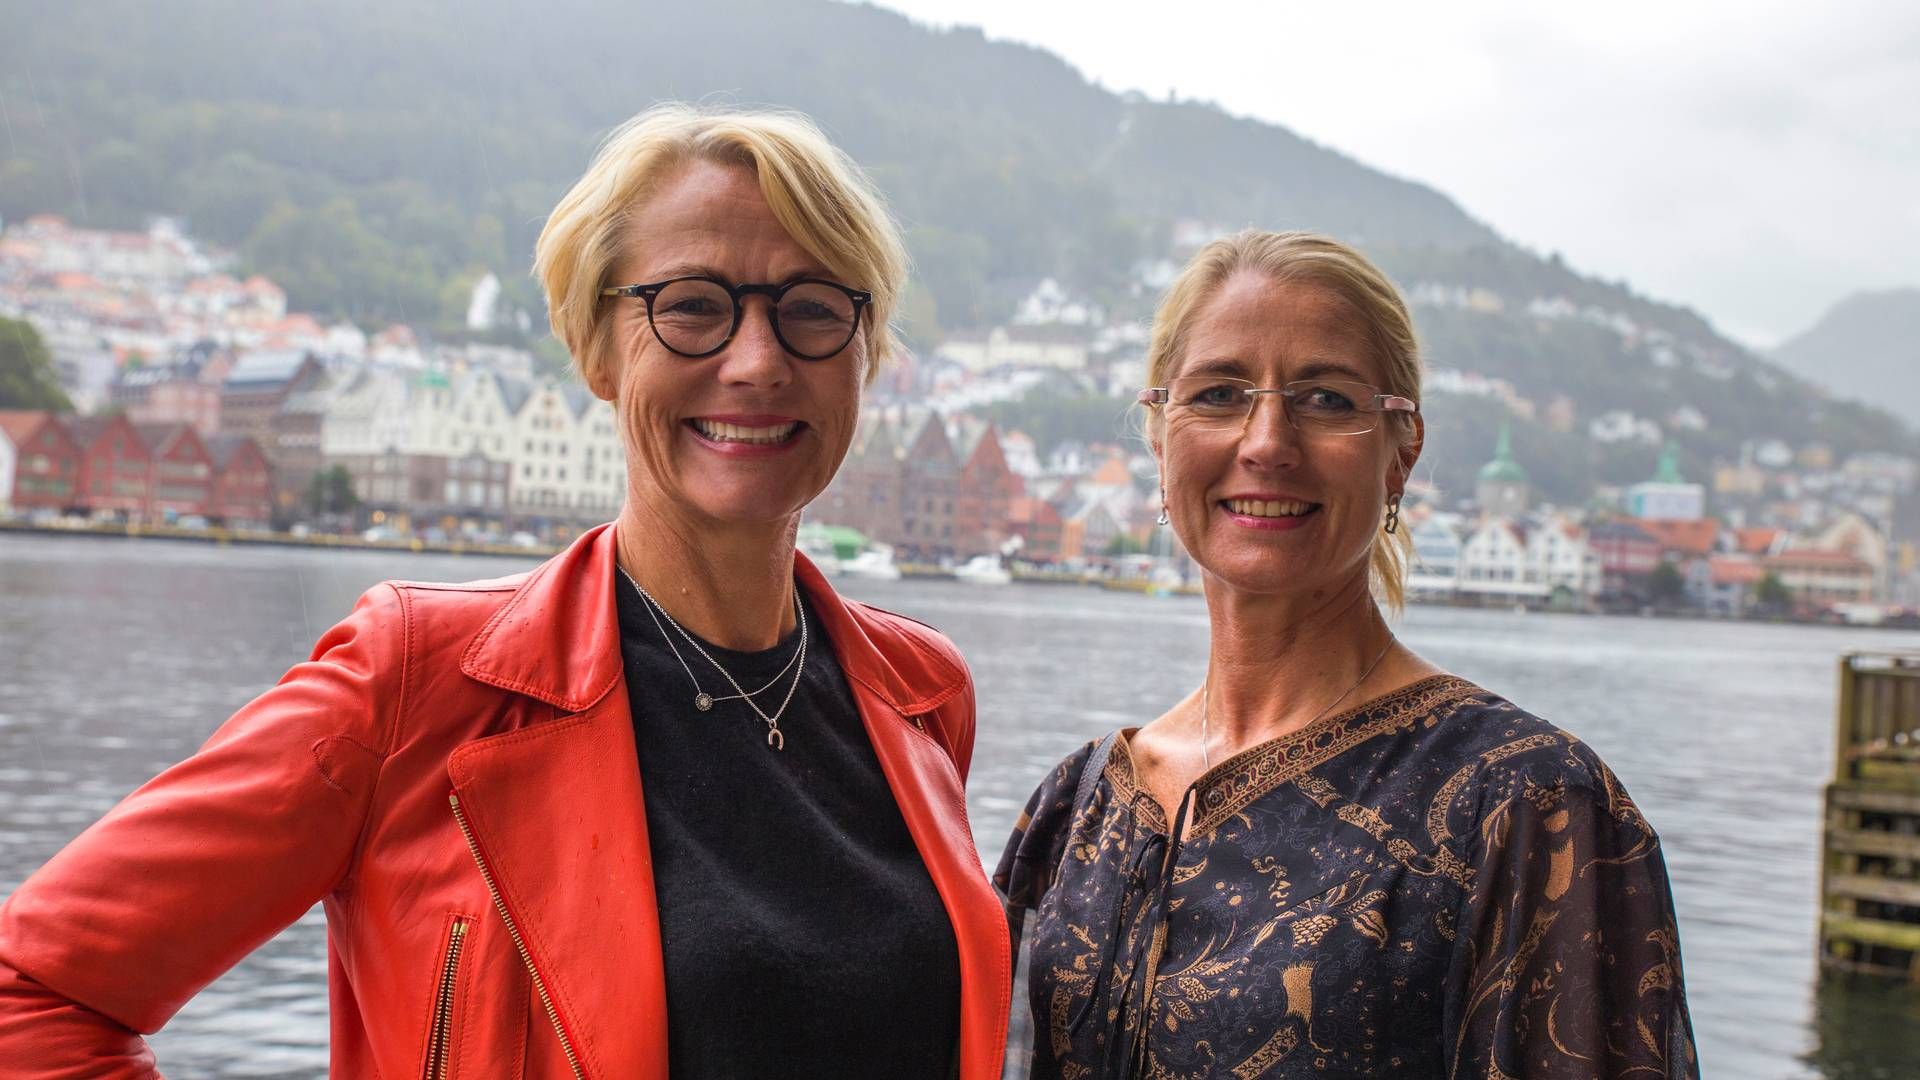 Formand for bestyrelsen i Grieg Star, Elisabeth Grieg (tv.), og Camilla Grieg, CEO i Grieg Star.